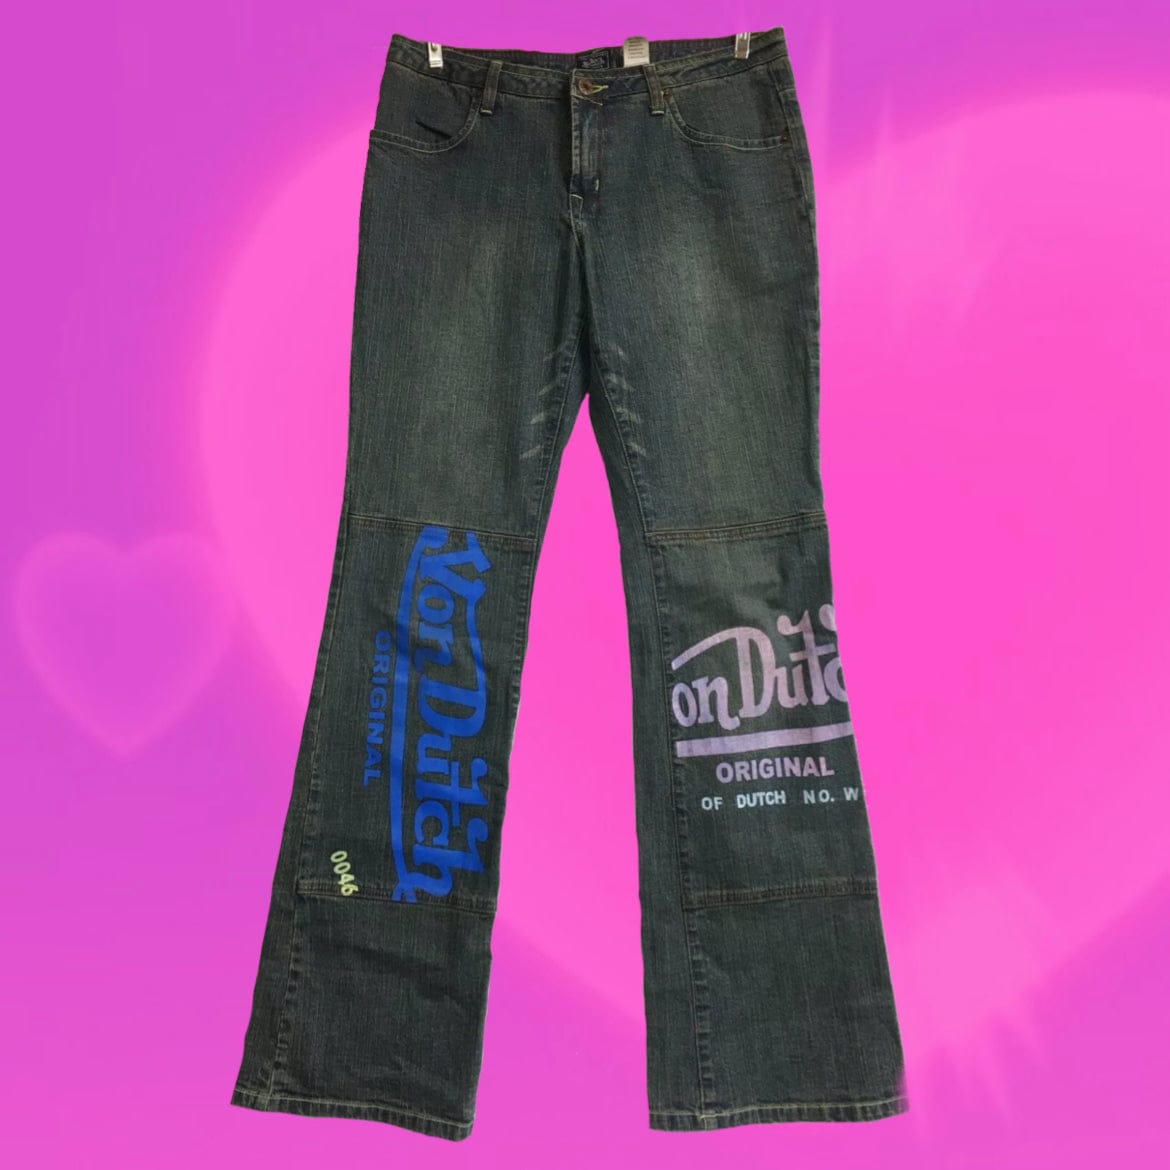 Von Dutch ICONIC bootcut jeans